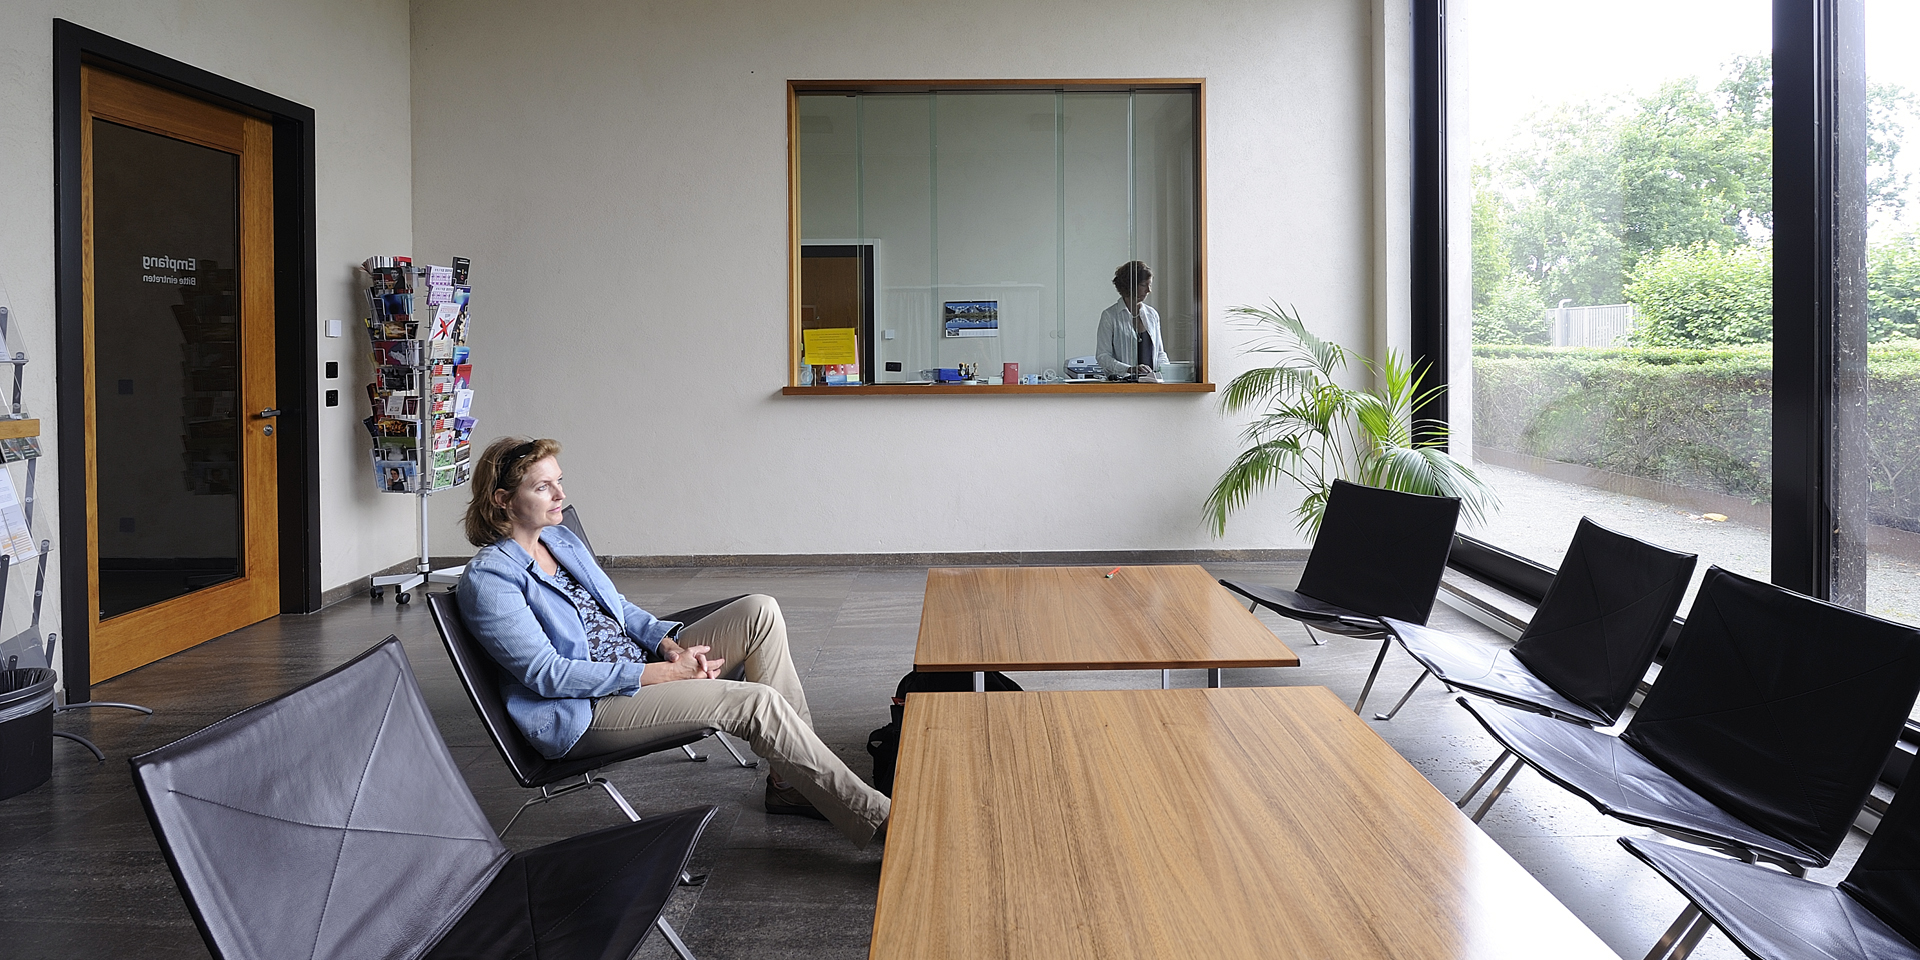 Warteraum des Schweizer Konsulats in Berlin. Eine sitzende Frau wartet, bis sie an der Reihe ist, während ein Mitarbeiter bzw. eine Mitarbeiterin des Konsulats hinter dem Schalter arbeitet.